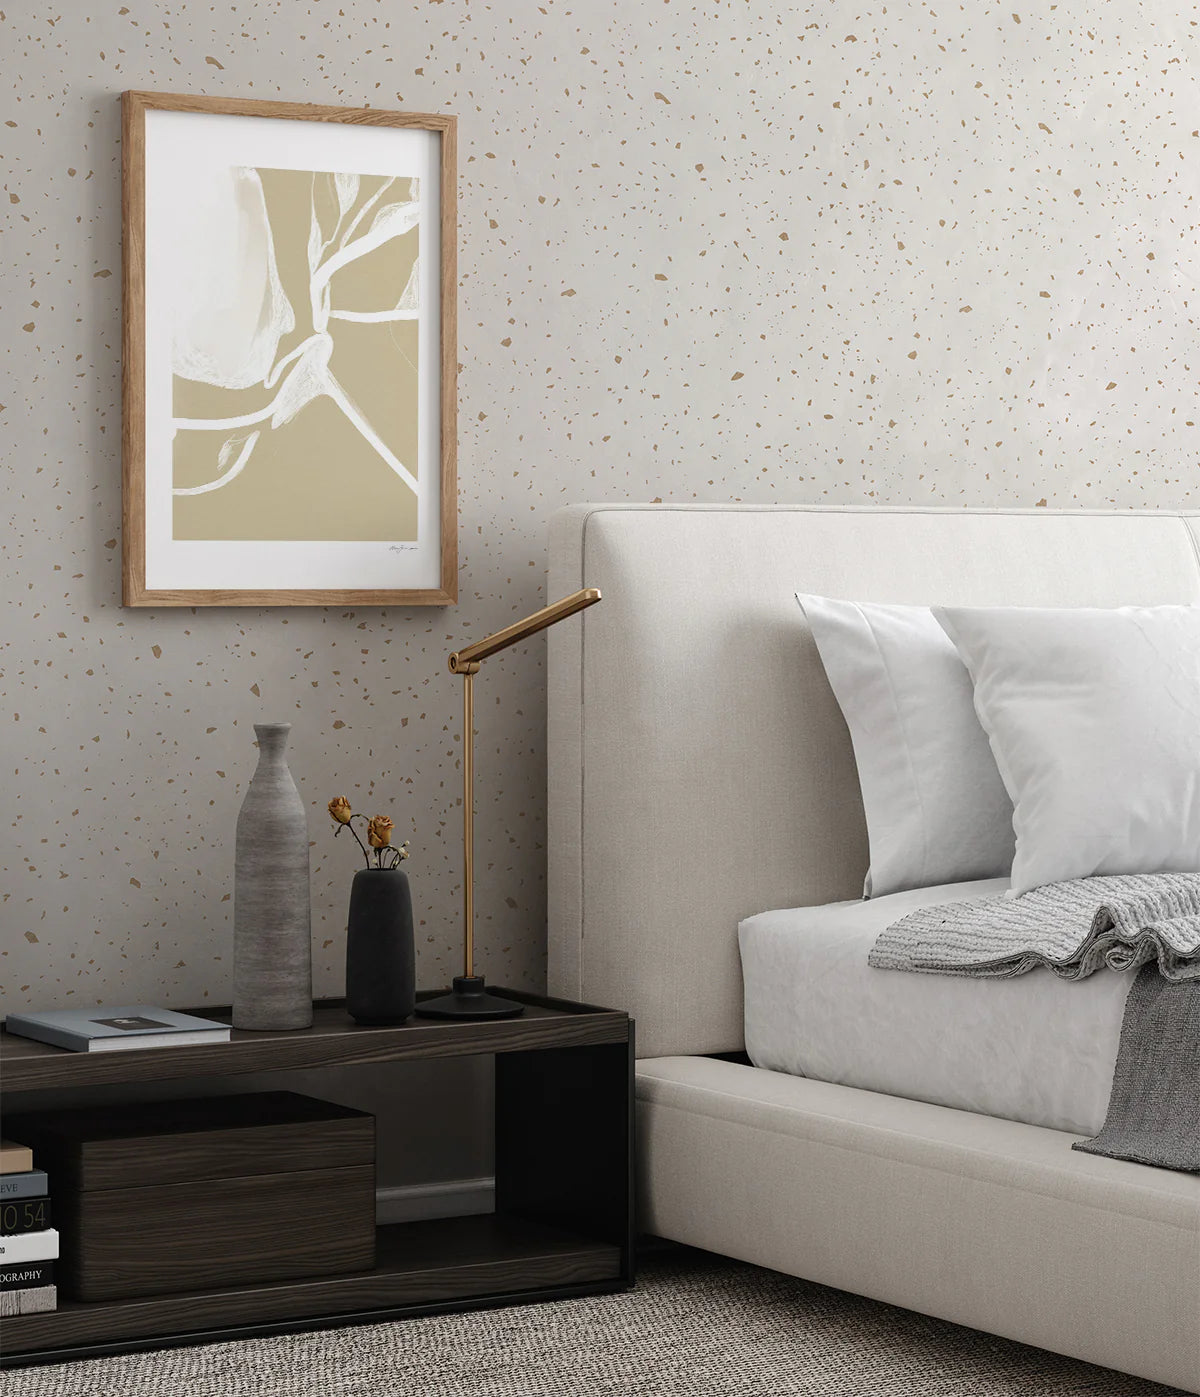 Gold Metallic Confetti Speckles, Pattern Wallpaper in modern bedroom